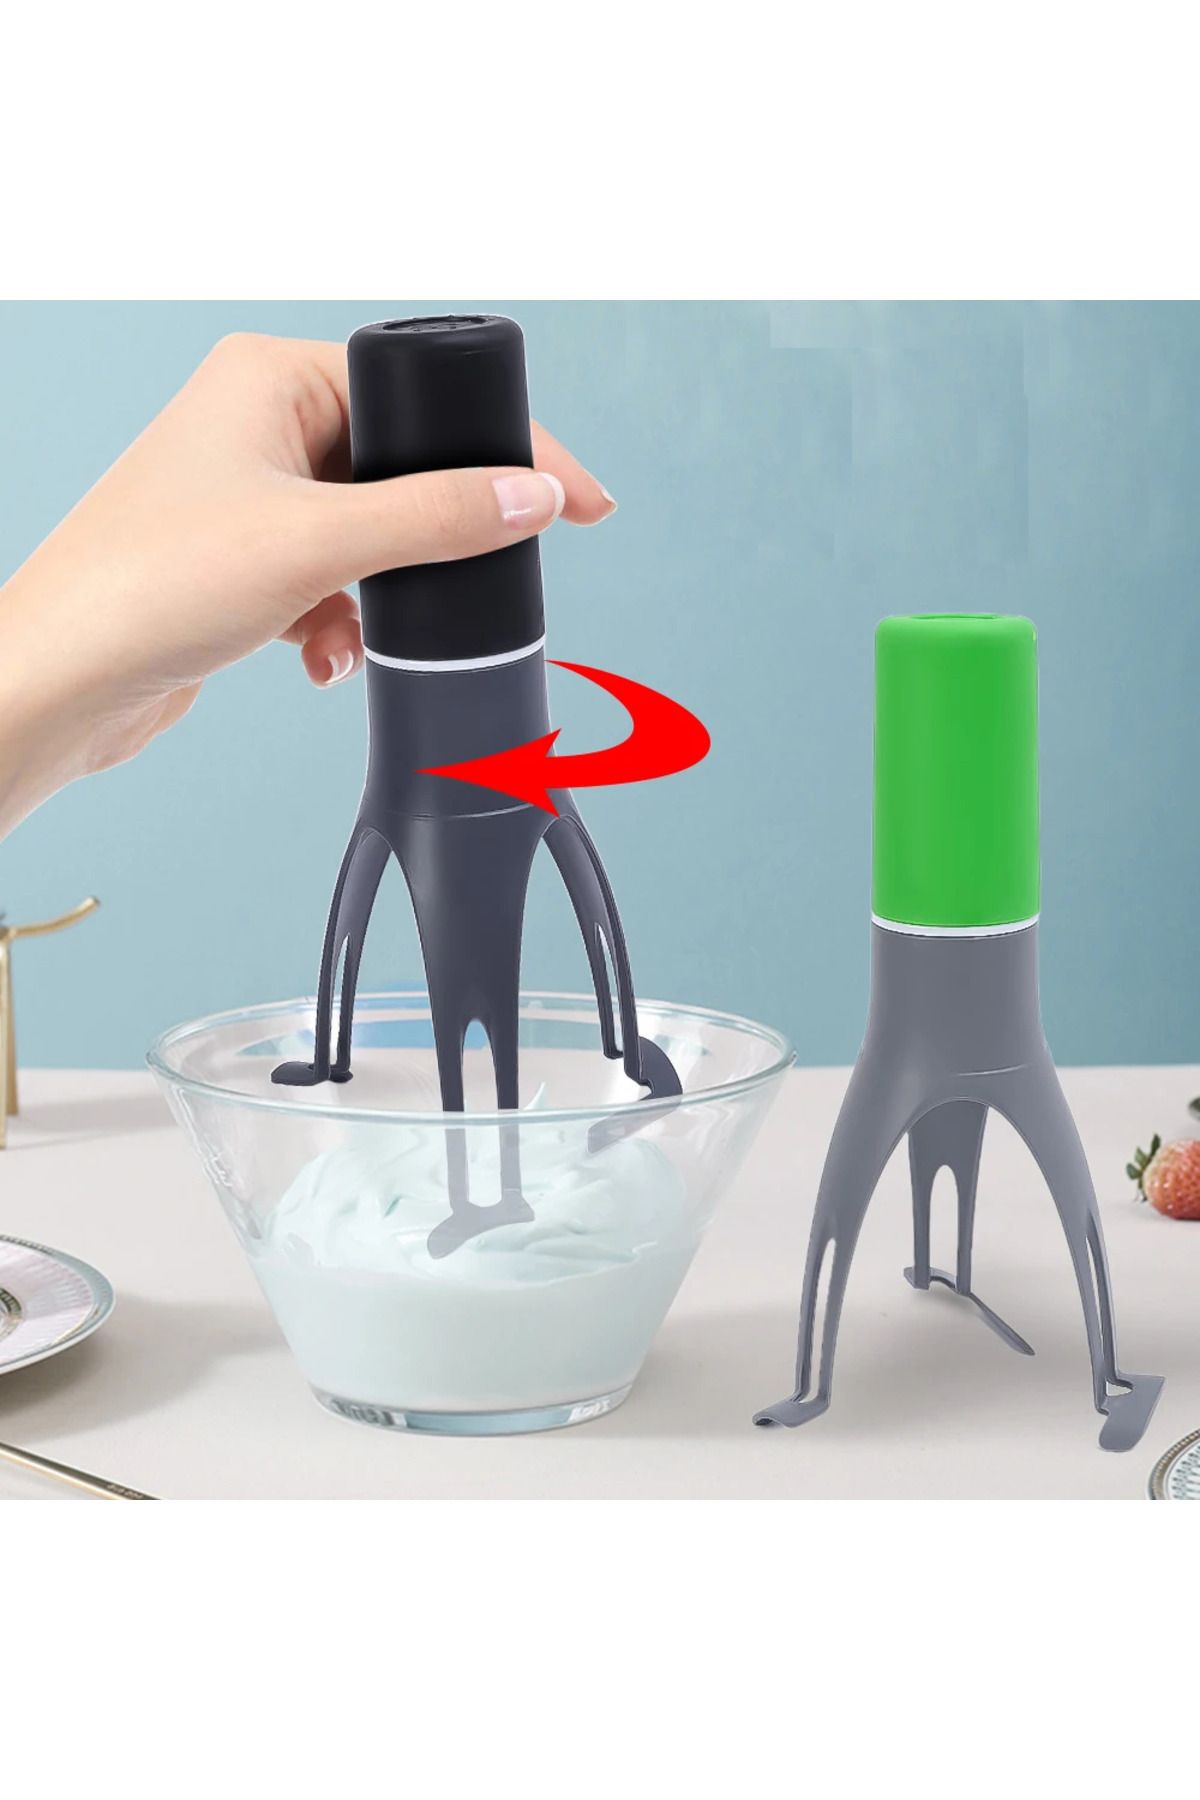 omilife Çorba Karıştırıcı 3 Kademeli Portatif Pilli Otomatik Tencere Karıştırıcı Pratik Çorba Yoğurt Çırpıcı